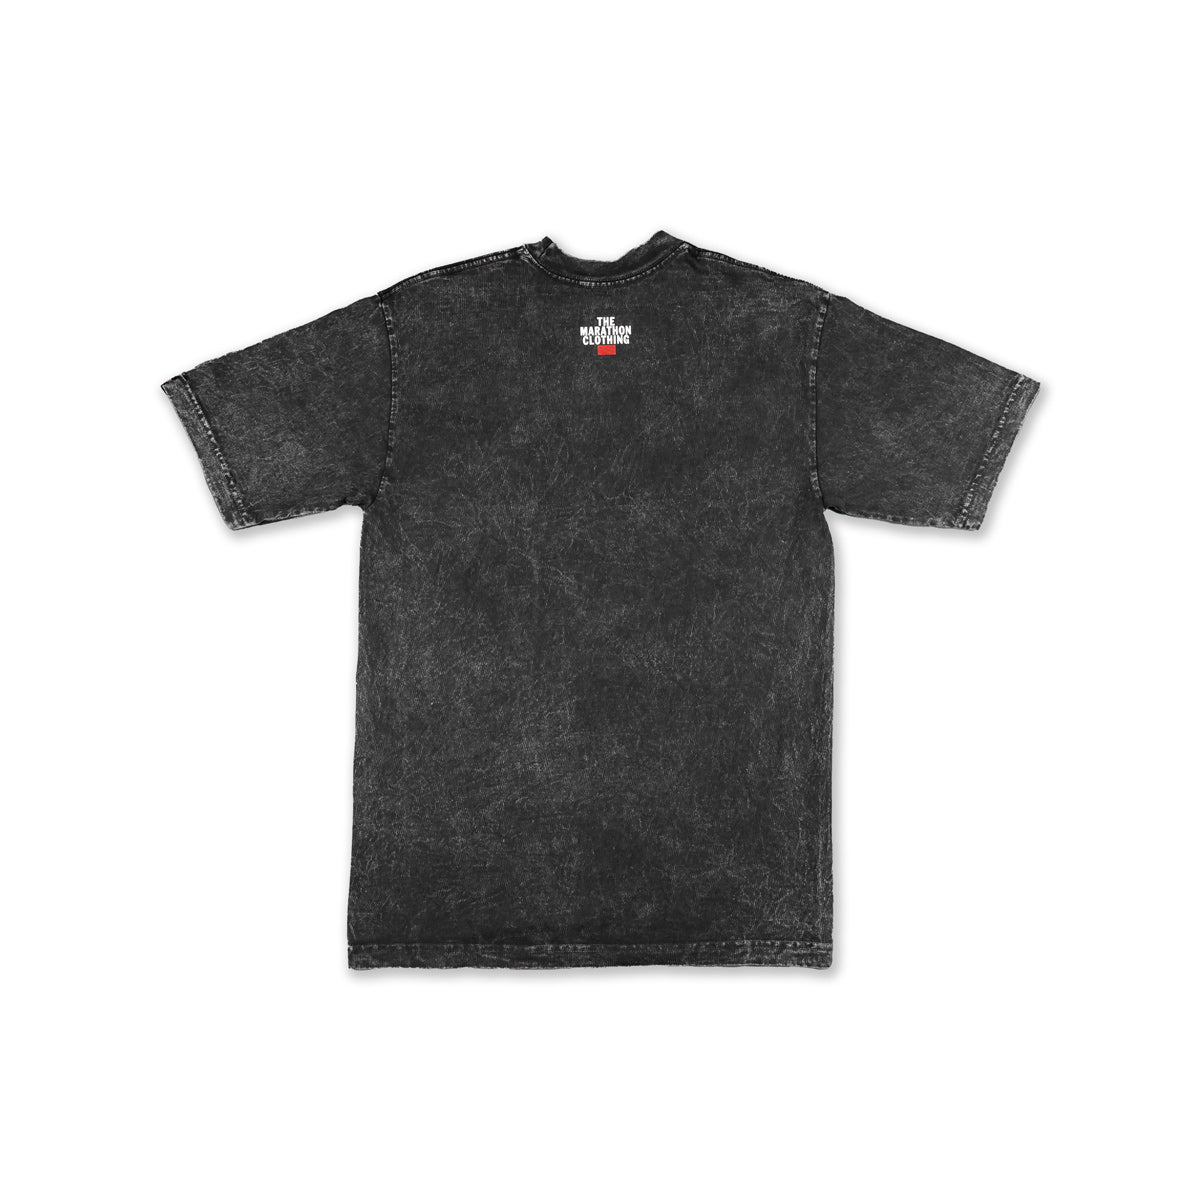 All Money Records Vintage T-Shirt - Washed Carbon Black/Black - Back